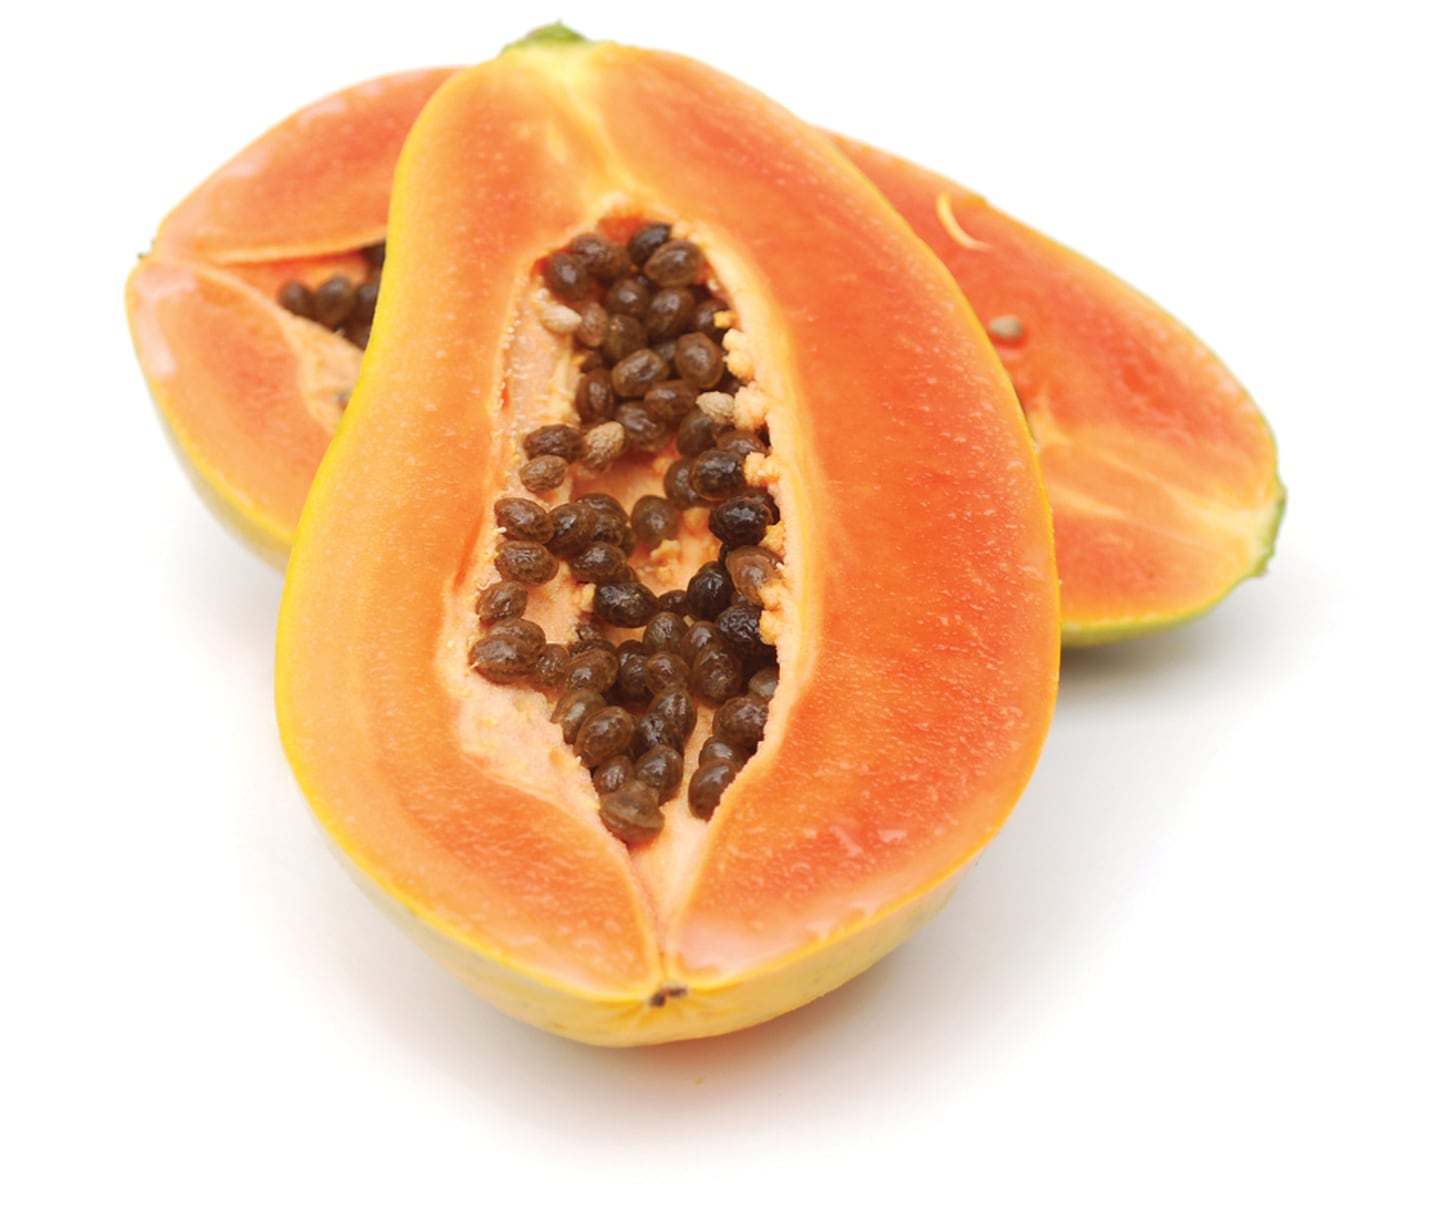 Una taza de papaya contiene 60 kcal
aproximadamente. Contiene una enzima llamada
papaína, que ayuda en la digestión de las proteínas,
por lo que es ideal en personas con problemas
gástricos como la acidez y la hernia hiatal. Es rica en
vitaminas A y C.